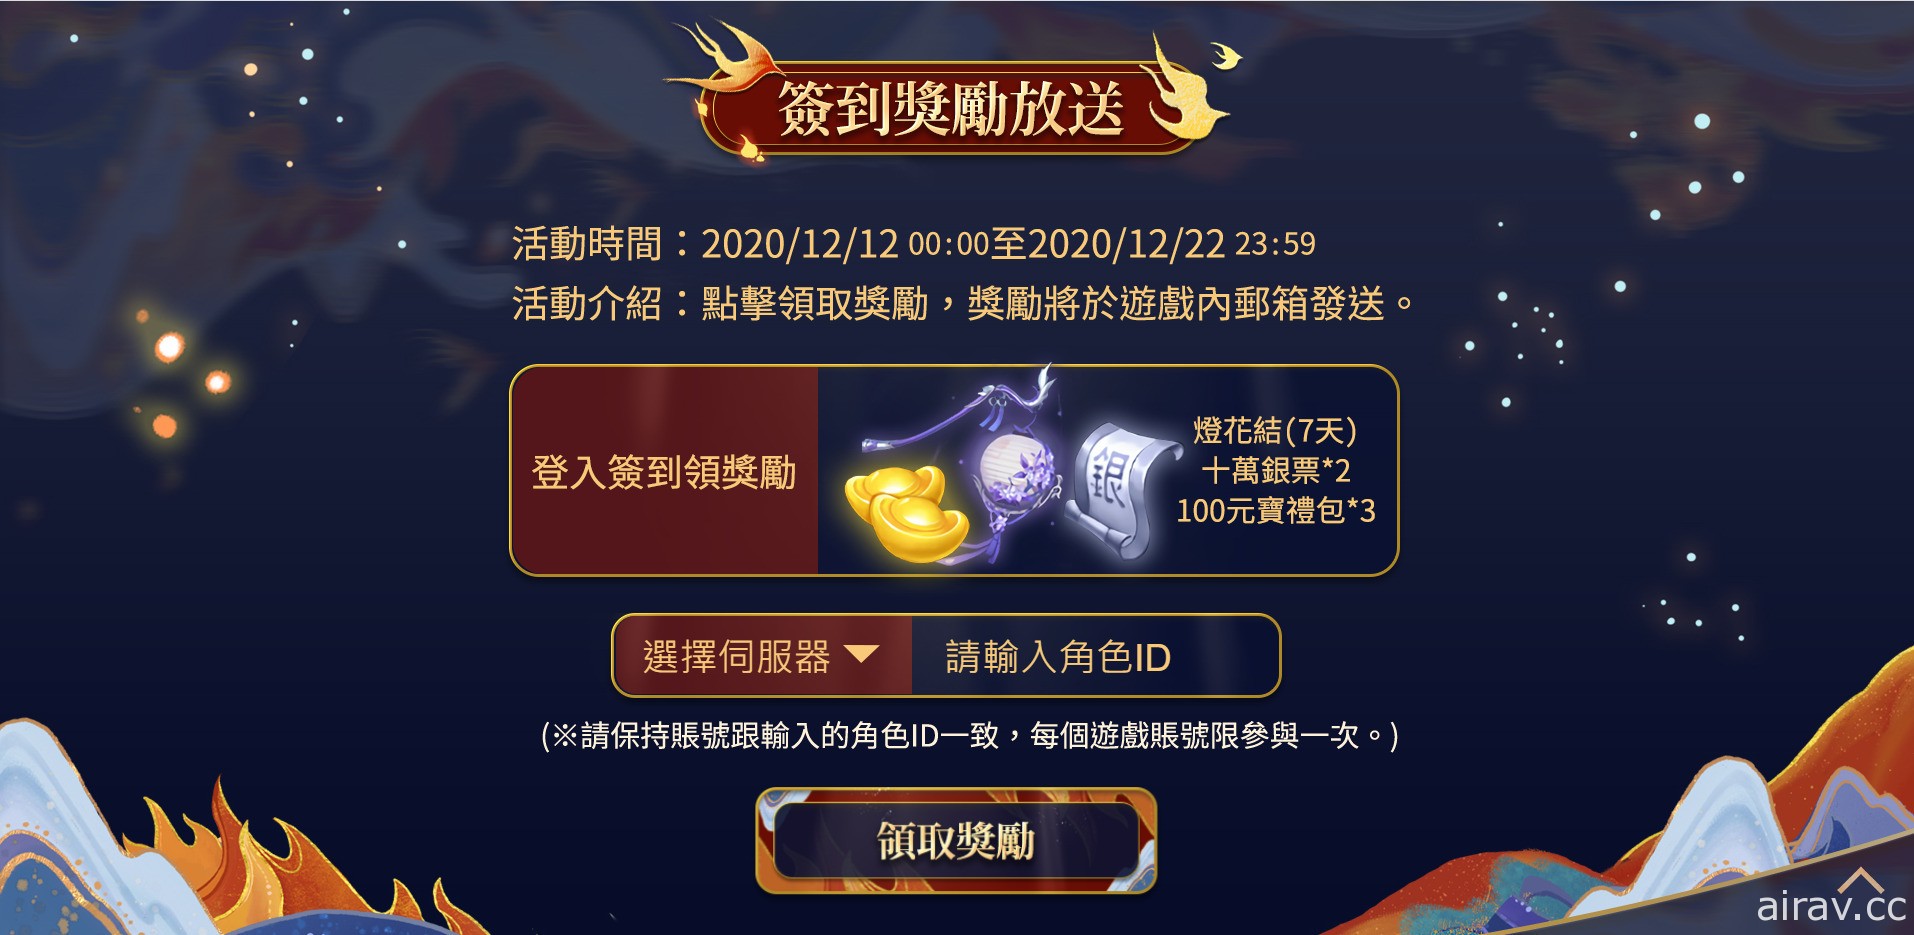 《倩女幽魂 2》欢庆周年 开放专属“麒麟洞”副本并增添“杭州雪景”